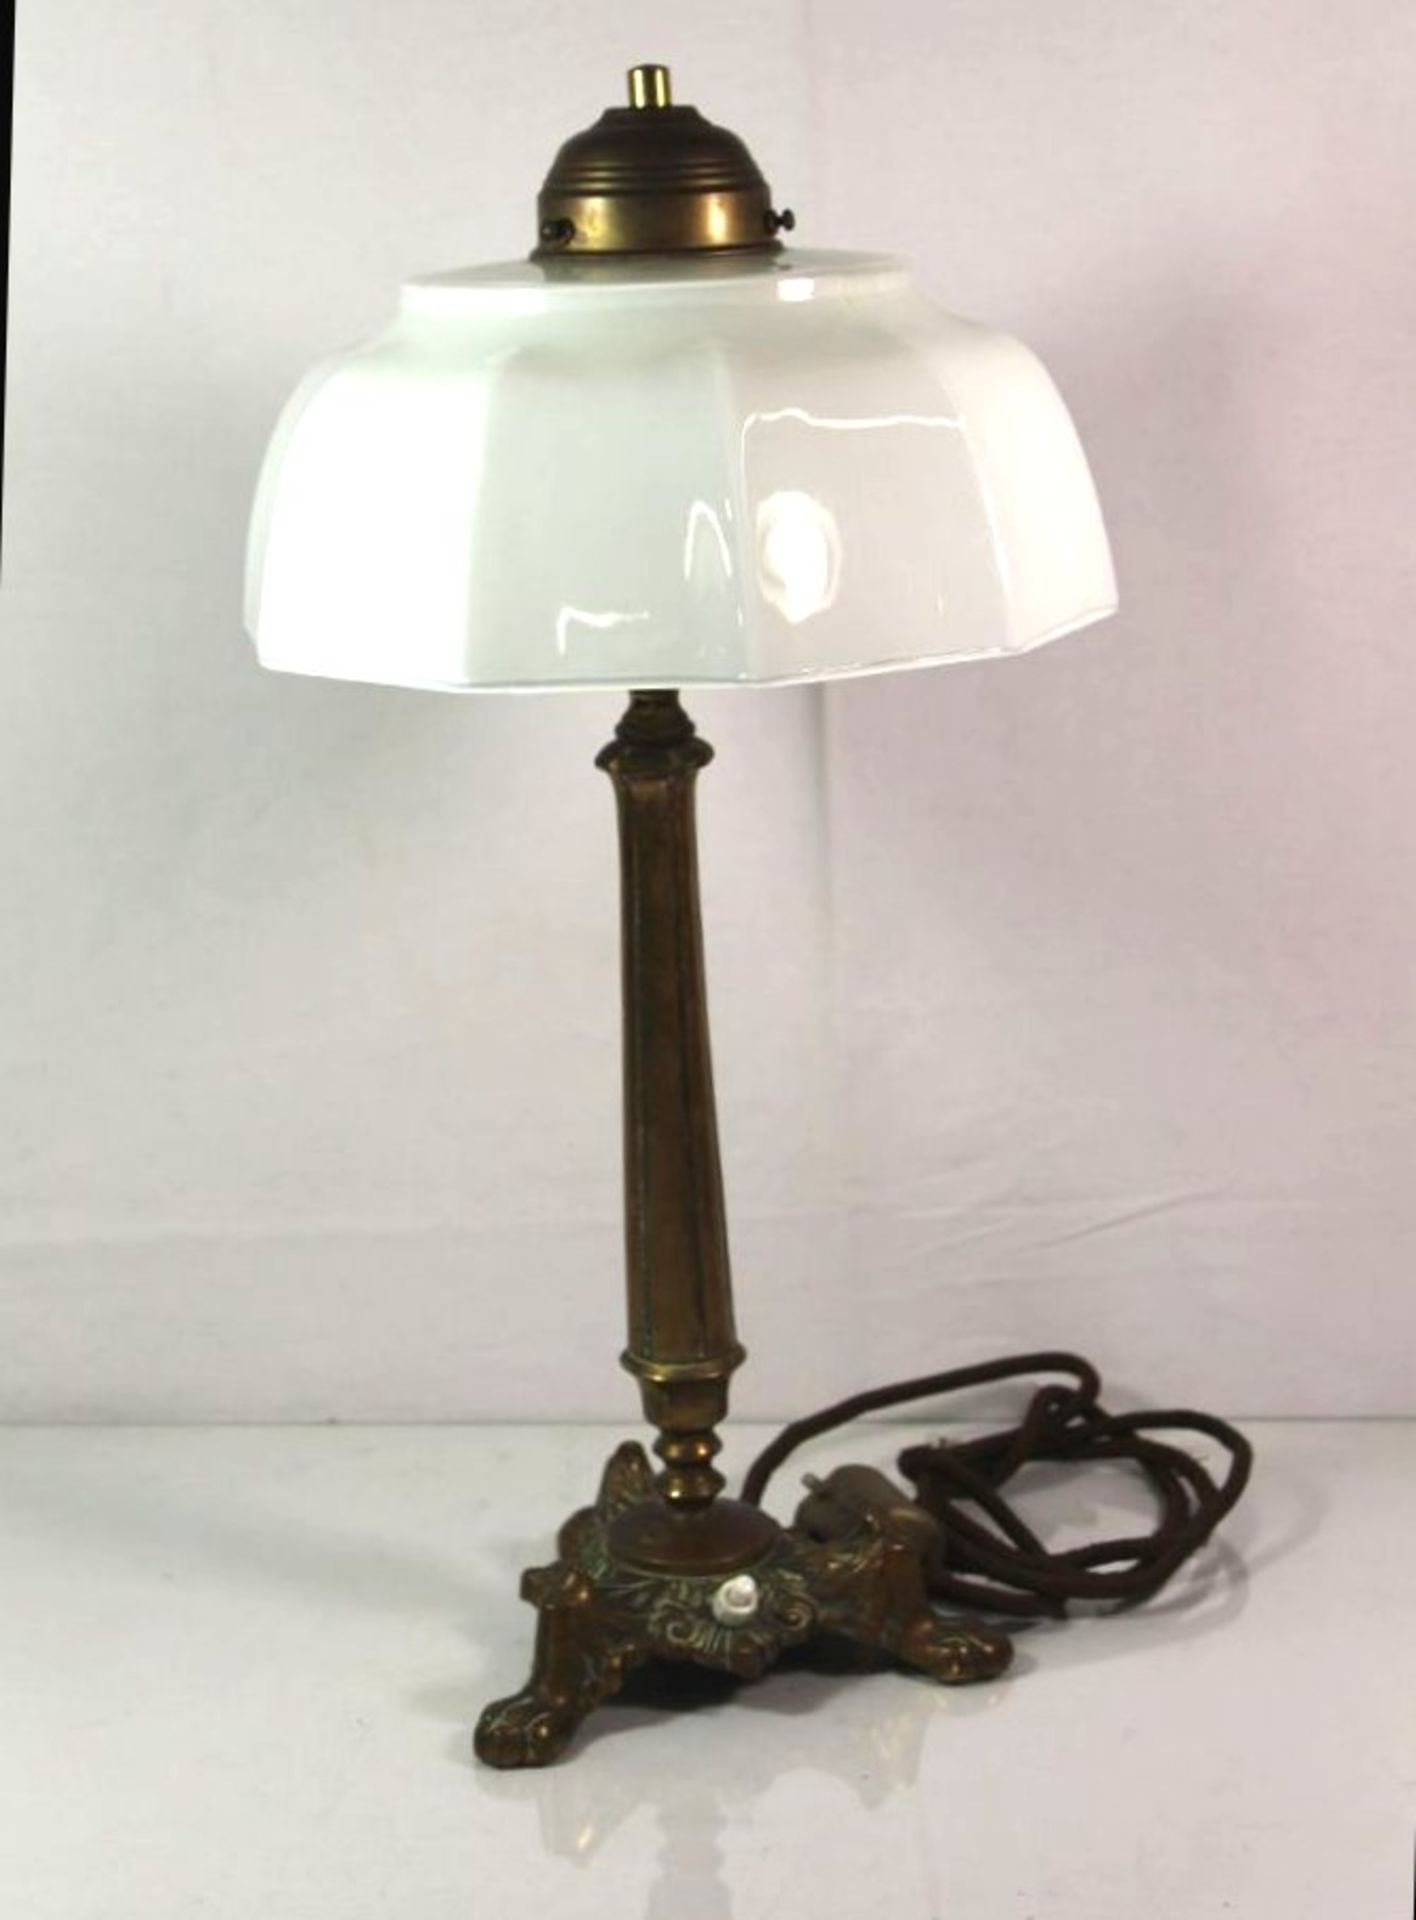 Tischlampe, Bronzestand, Michglasschirm dieser geklebt, H-48cm.- - -22.61 % buyer's premium on the